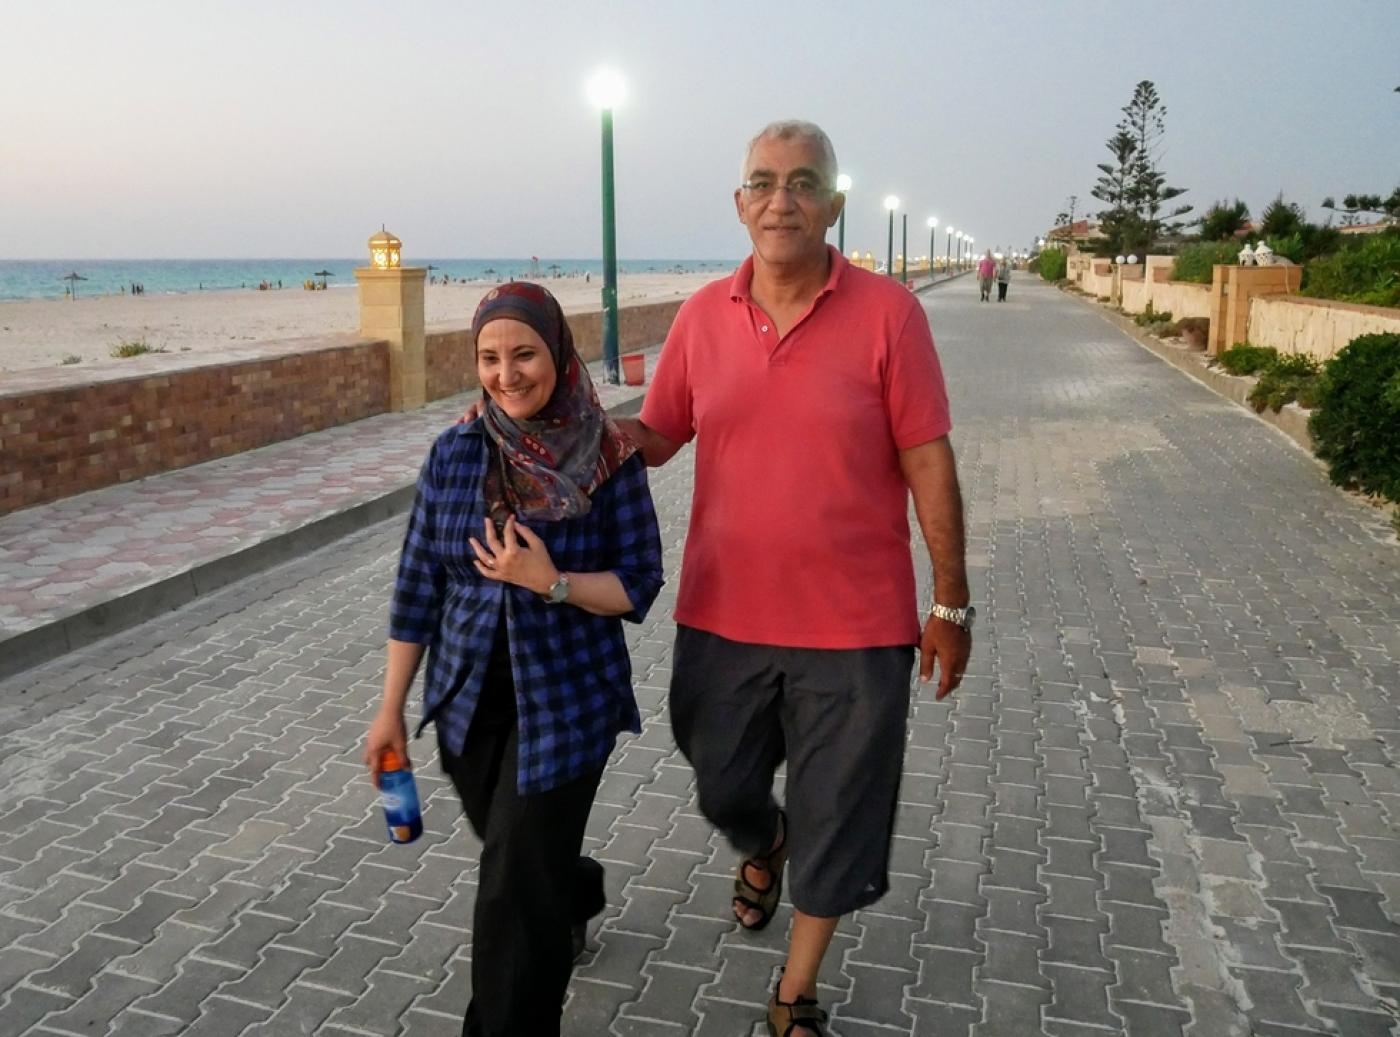 Qaradawi was arrested with her husband Hosam Khalaf in 2017 